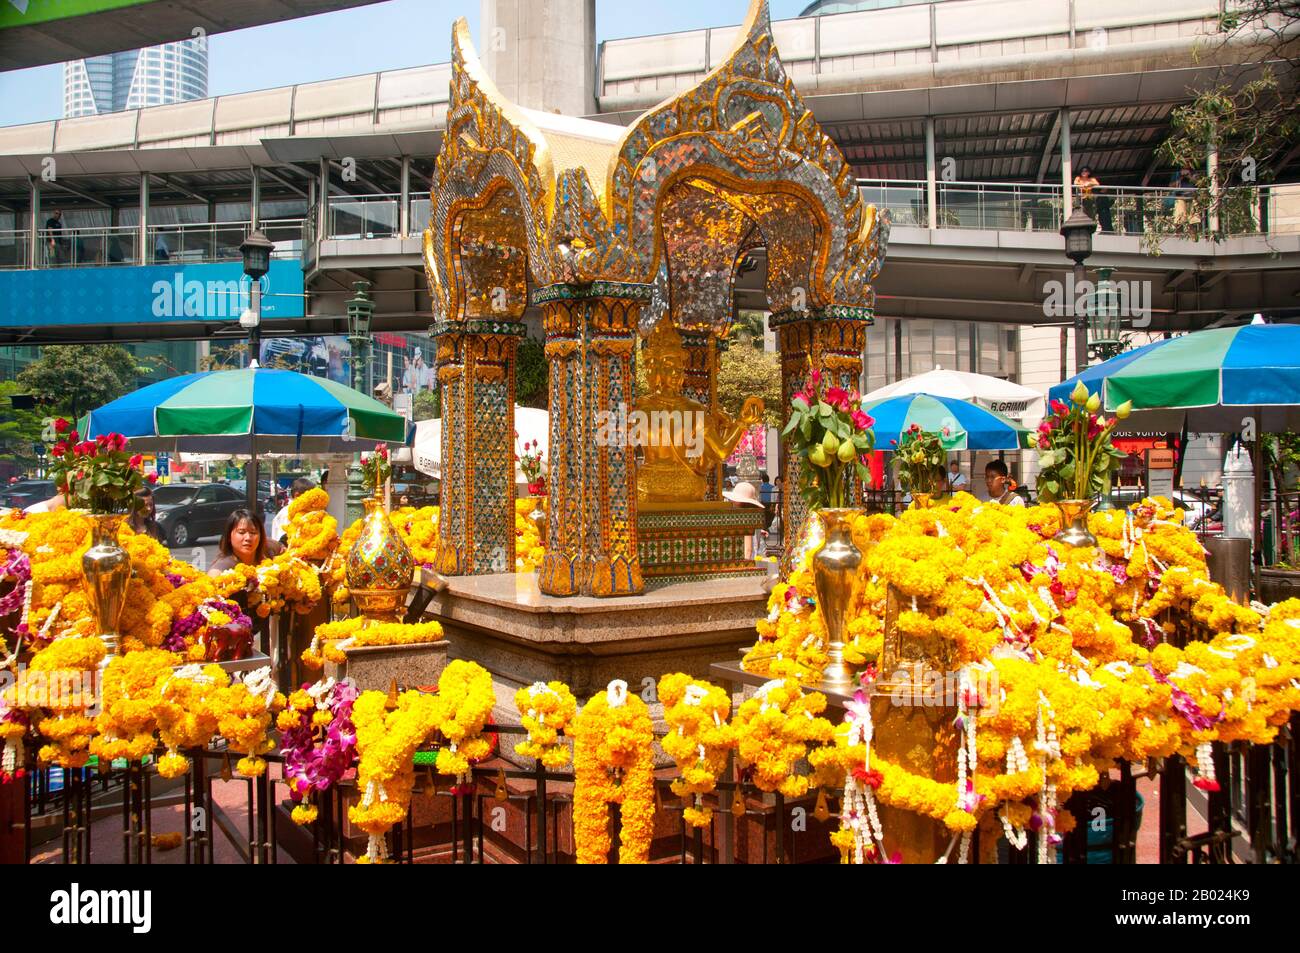 Thaïlande: Sanctuaire Erawan (San Phra Phrom), Bangkok. Le sanctuaire d'Erawan, sous la gare de Chit LOM Skytrain à Bangkok, représente le dieu hindou à quatre têtes de la création, Brahma (Phra Phrom), et a été érigé en 1956 après une série de mésavenses fatales ont été frayés la construction de l'hôtel Erawan original. Brahmā est le dieu hindou de la création et l'un des Trimūrti, les autres étant Vishnu et Shiva. Selon le Brahmā Purāņa, il est le père de Manu, et de Manu tous les êtres humains sont descendants. Dans le Rāmāyaņa et le Mahābhārata, il est appelé le progéniteur de tous les êtres humains. Banque D'Images